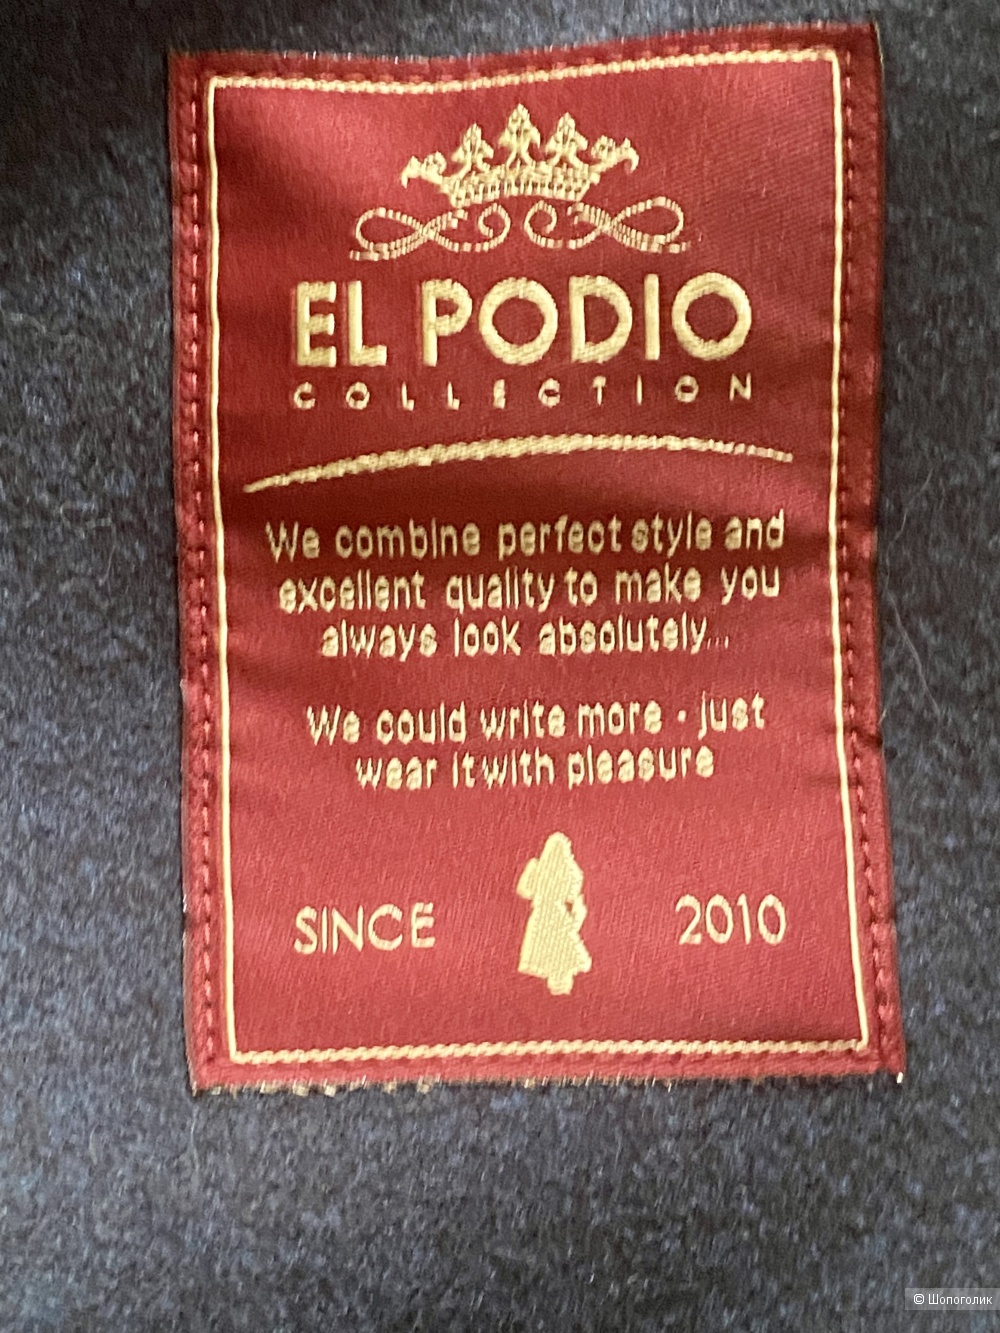 Пальто El Podio, размер 44-46.